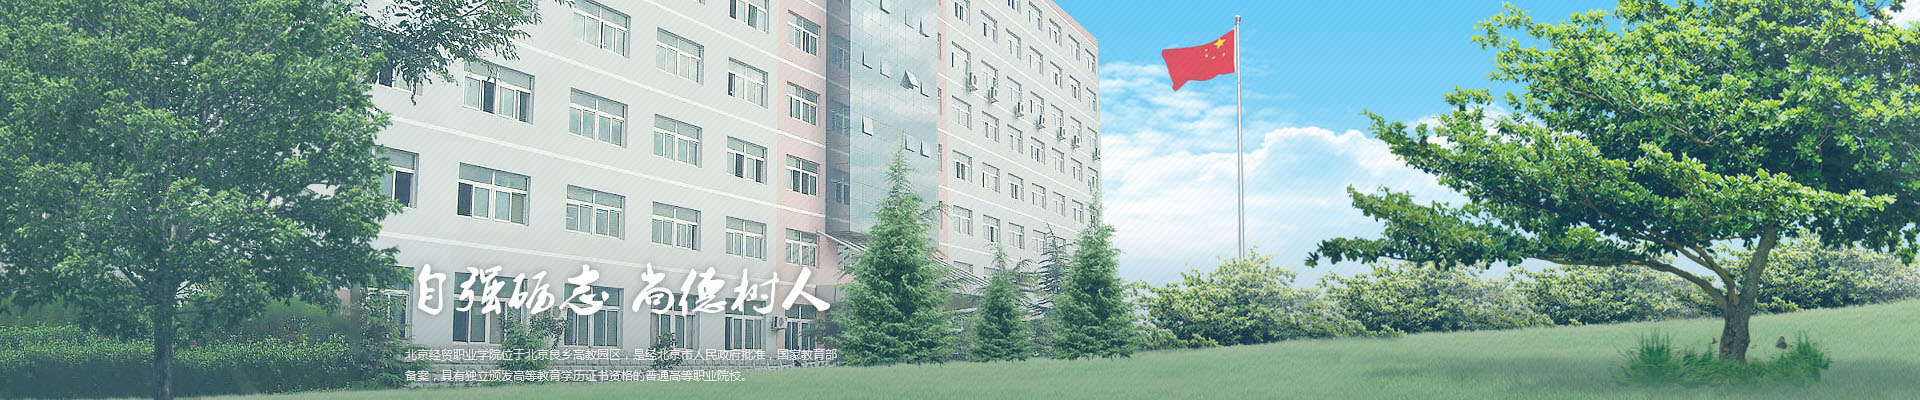 北京北大方正软件职业技术学院-校园风景